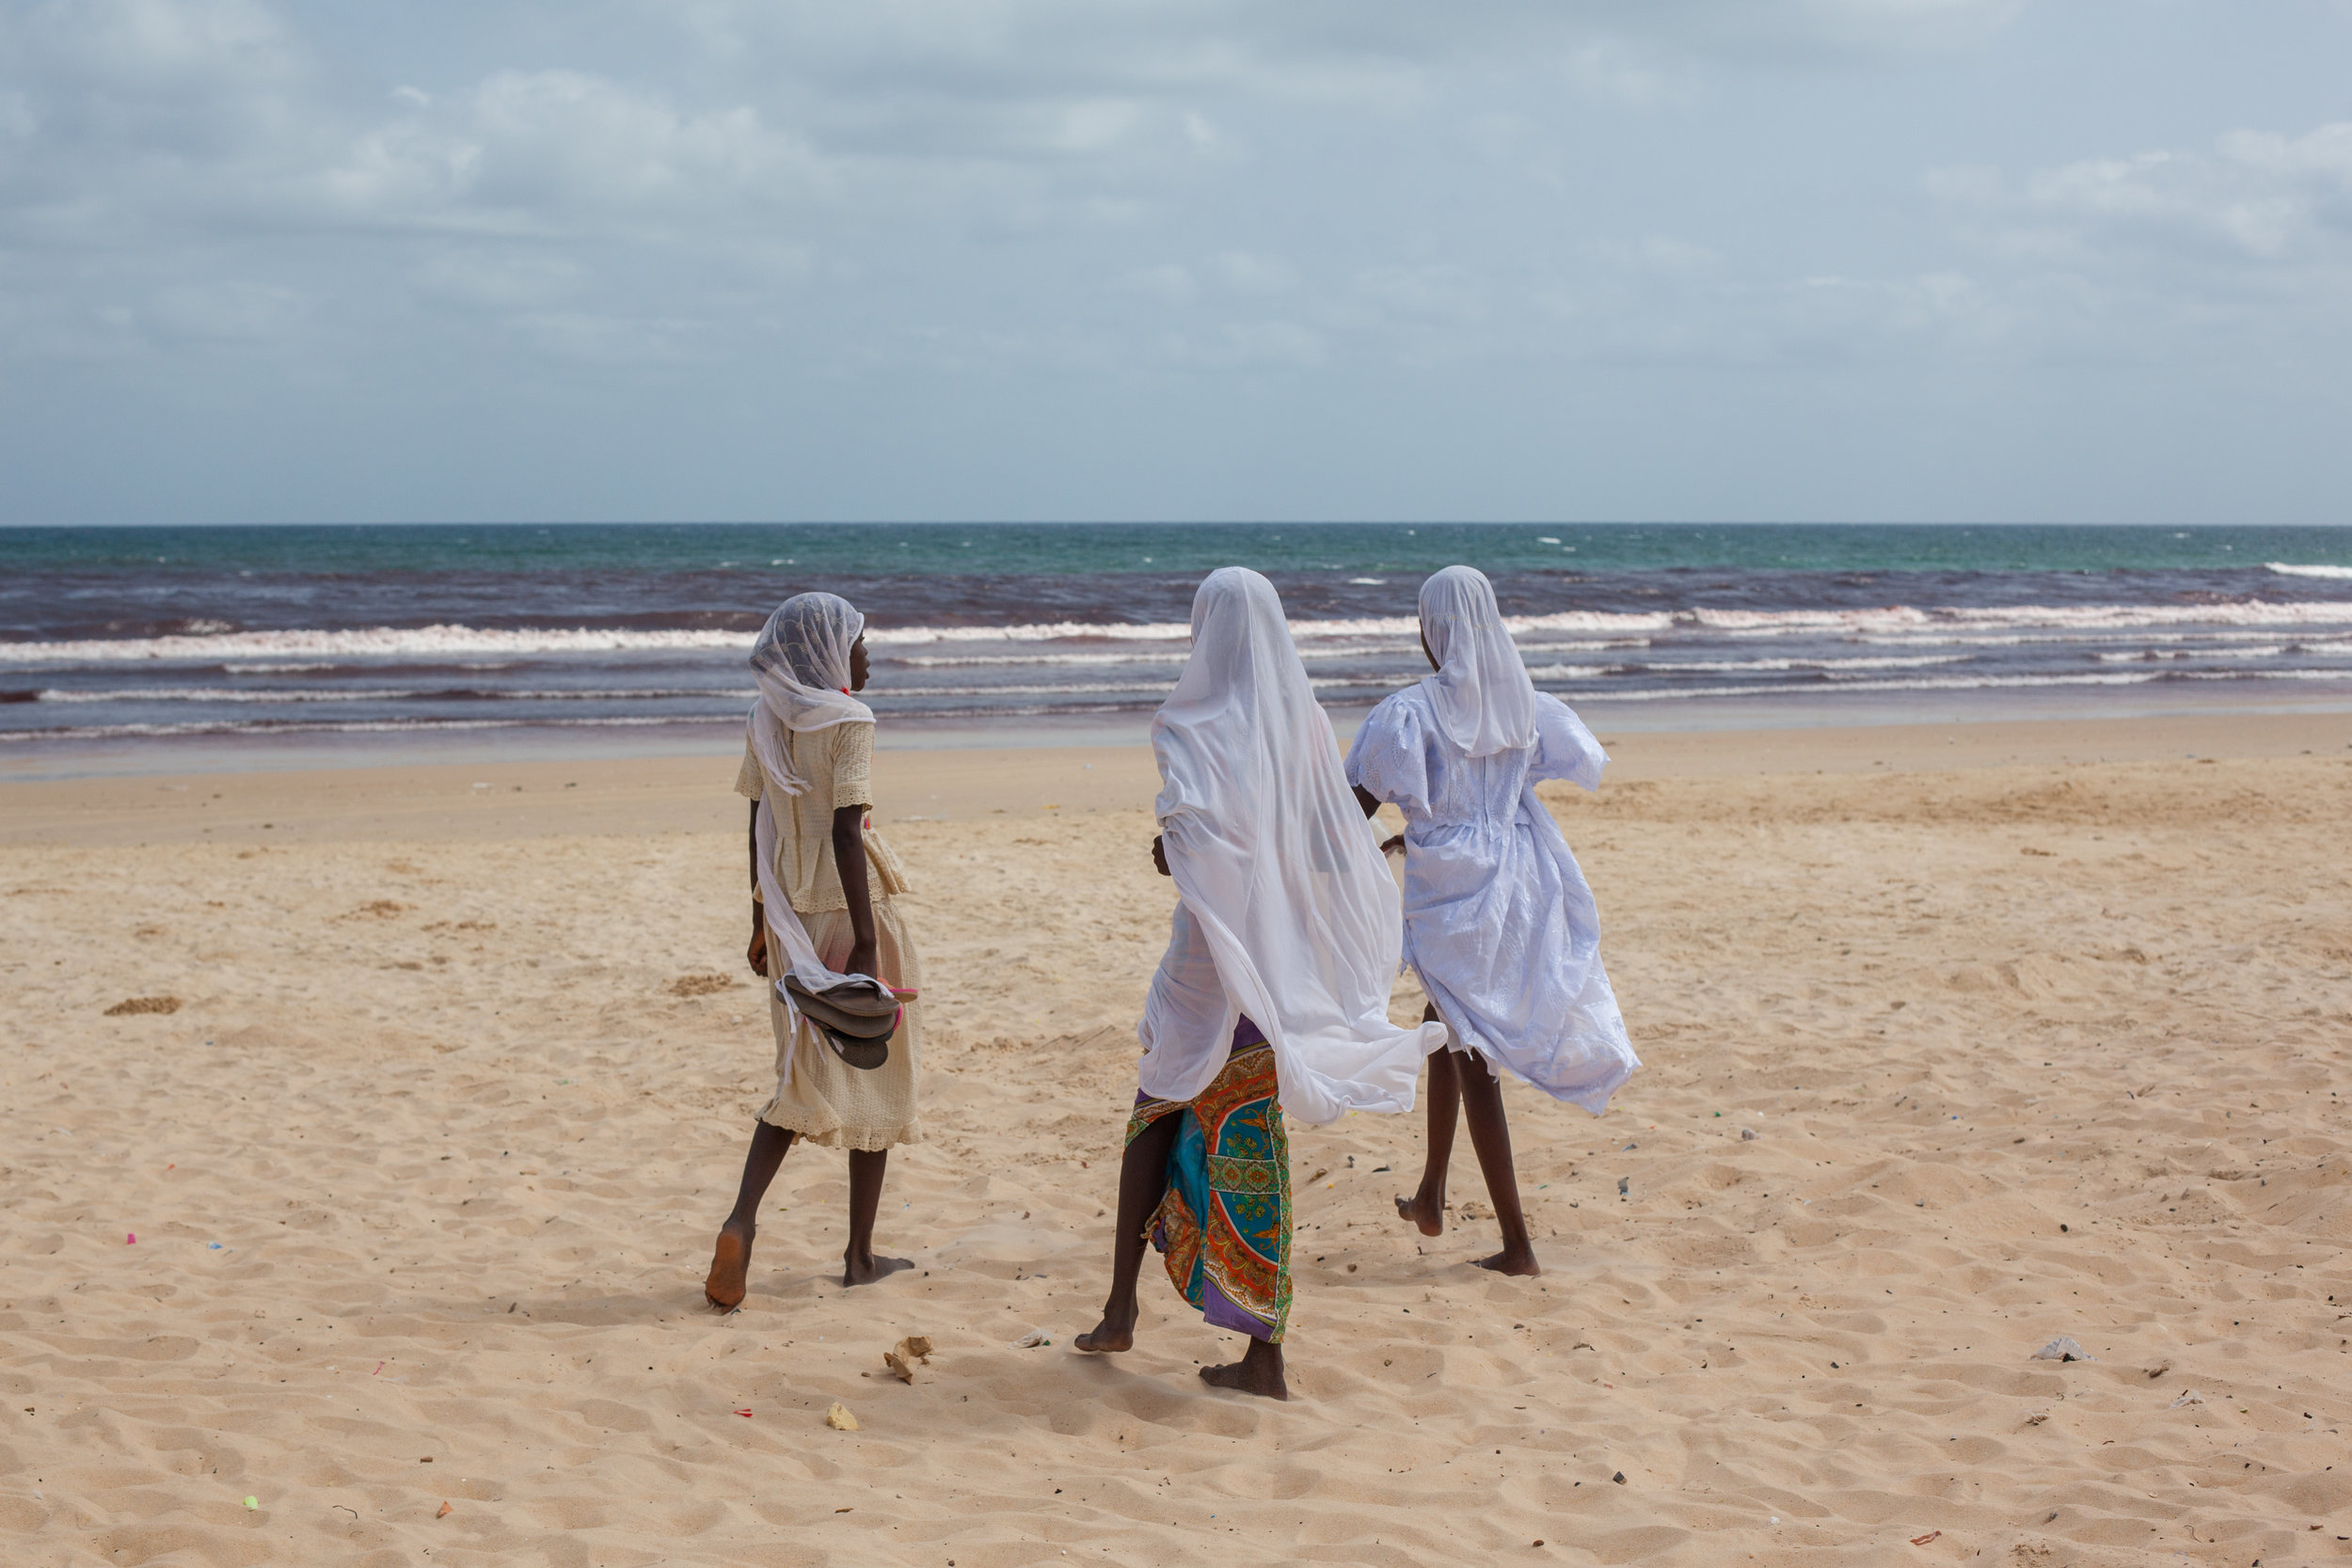 Muslim Girls on a beach in Senegal.